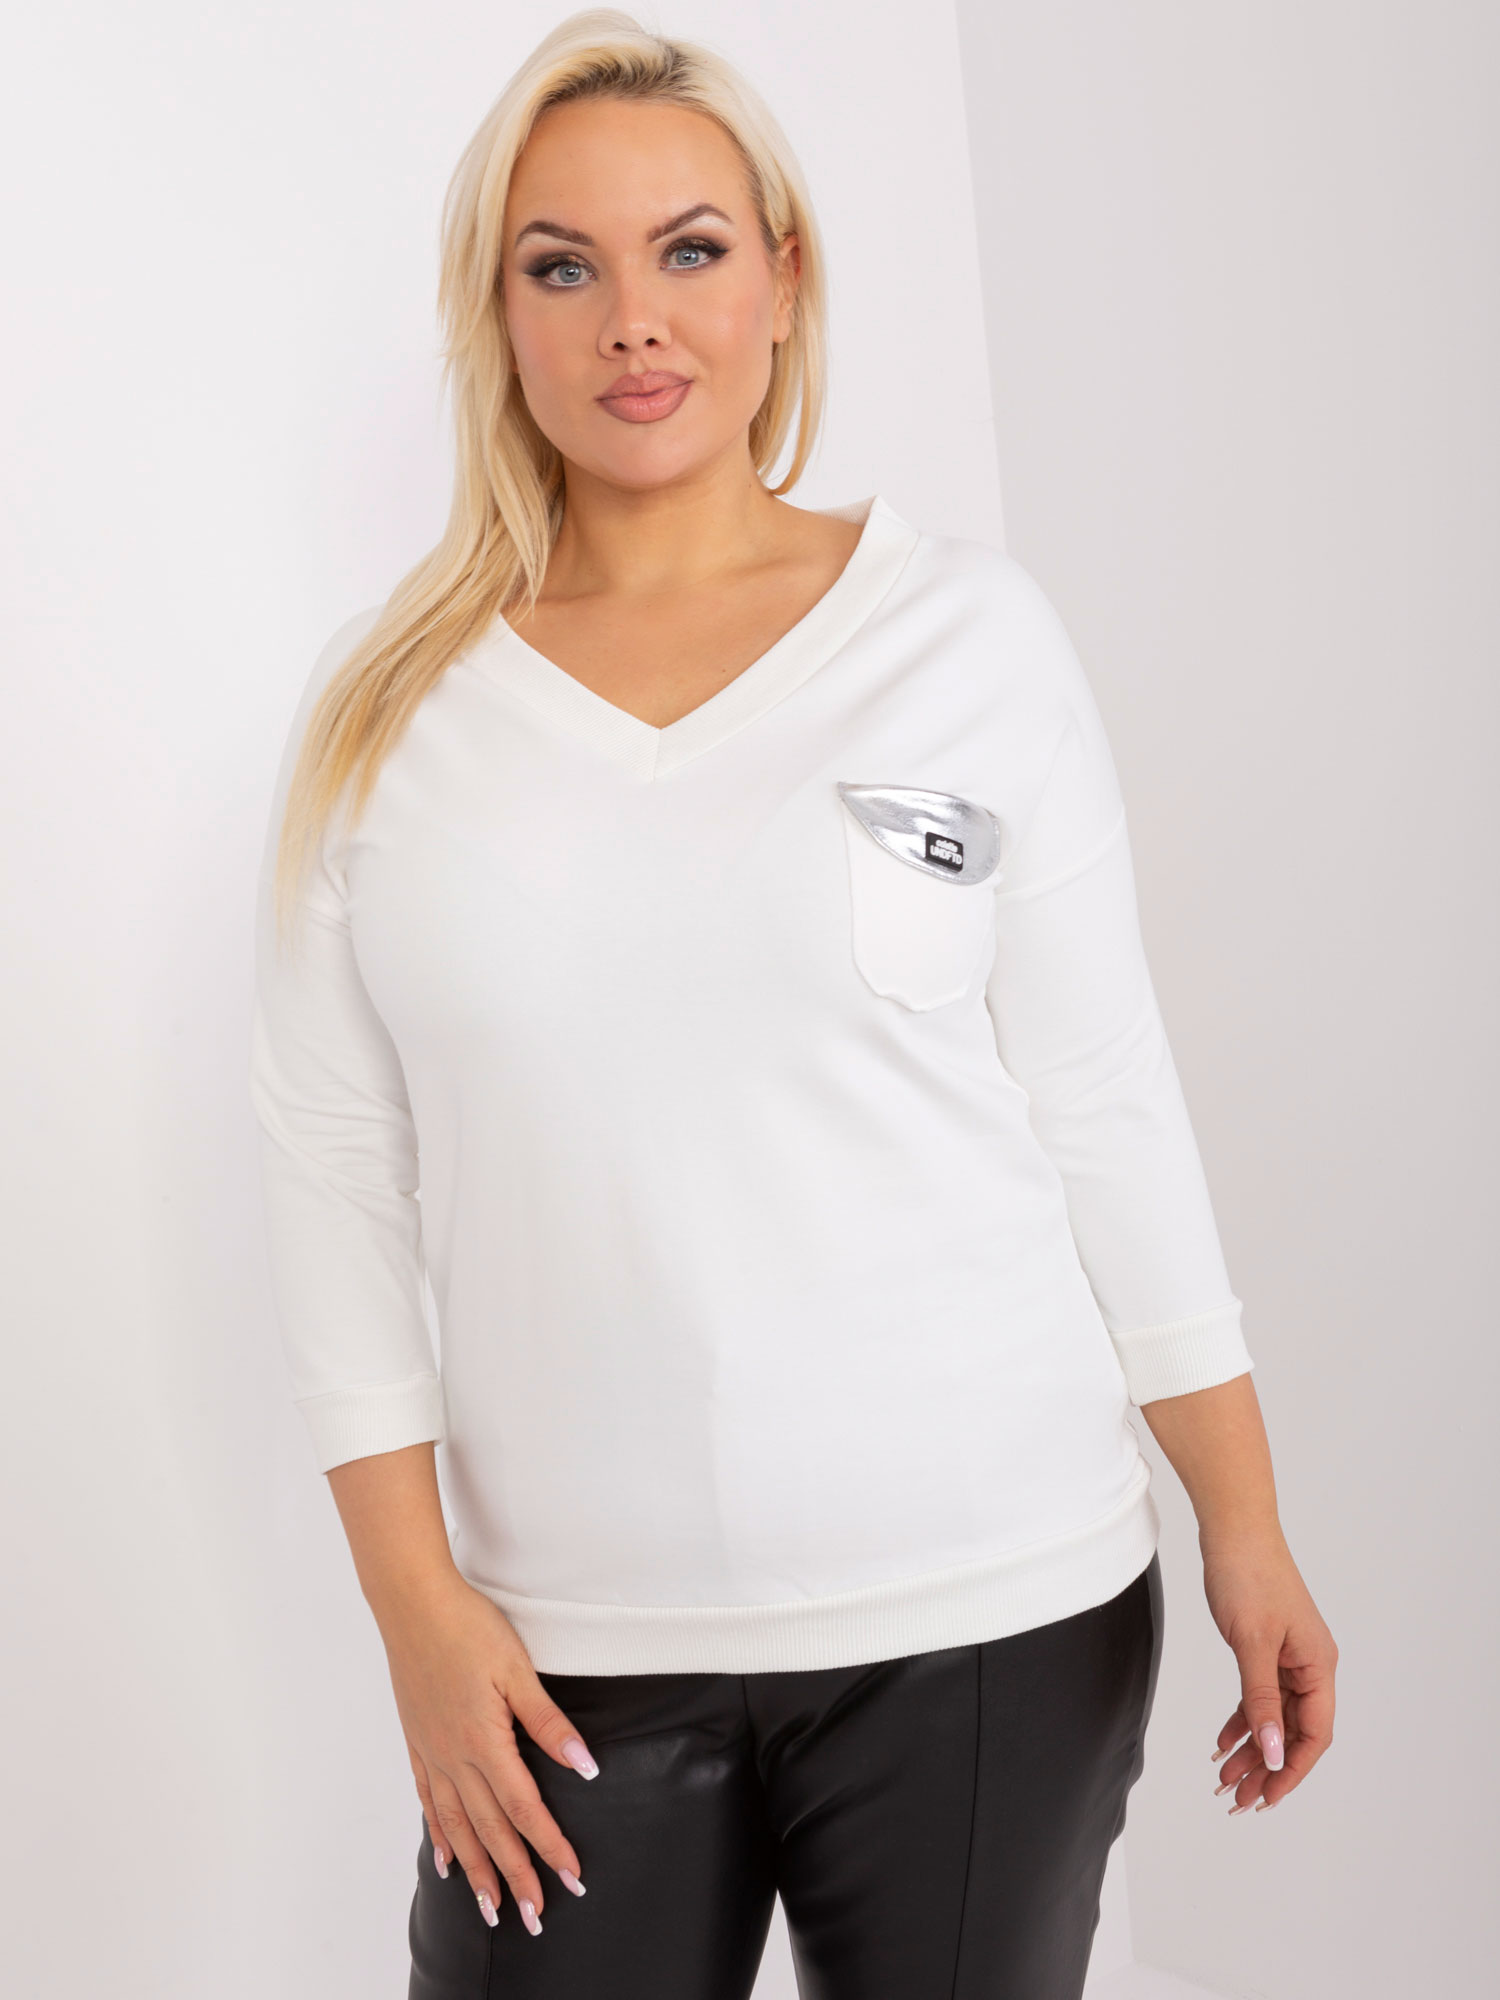 Bílé tričko s kapsičkou RV-BZ-9075.28P-white Velikost: ONE SIZE